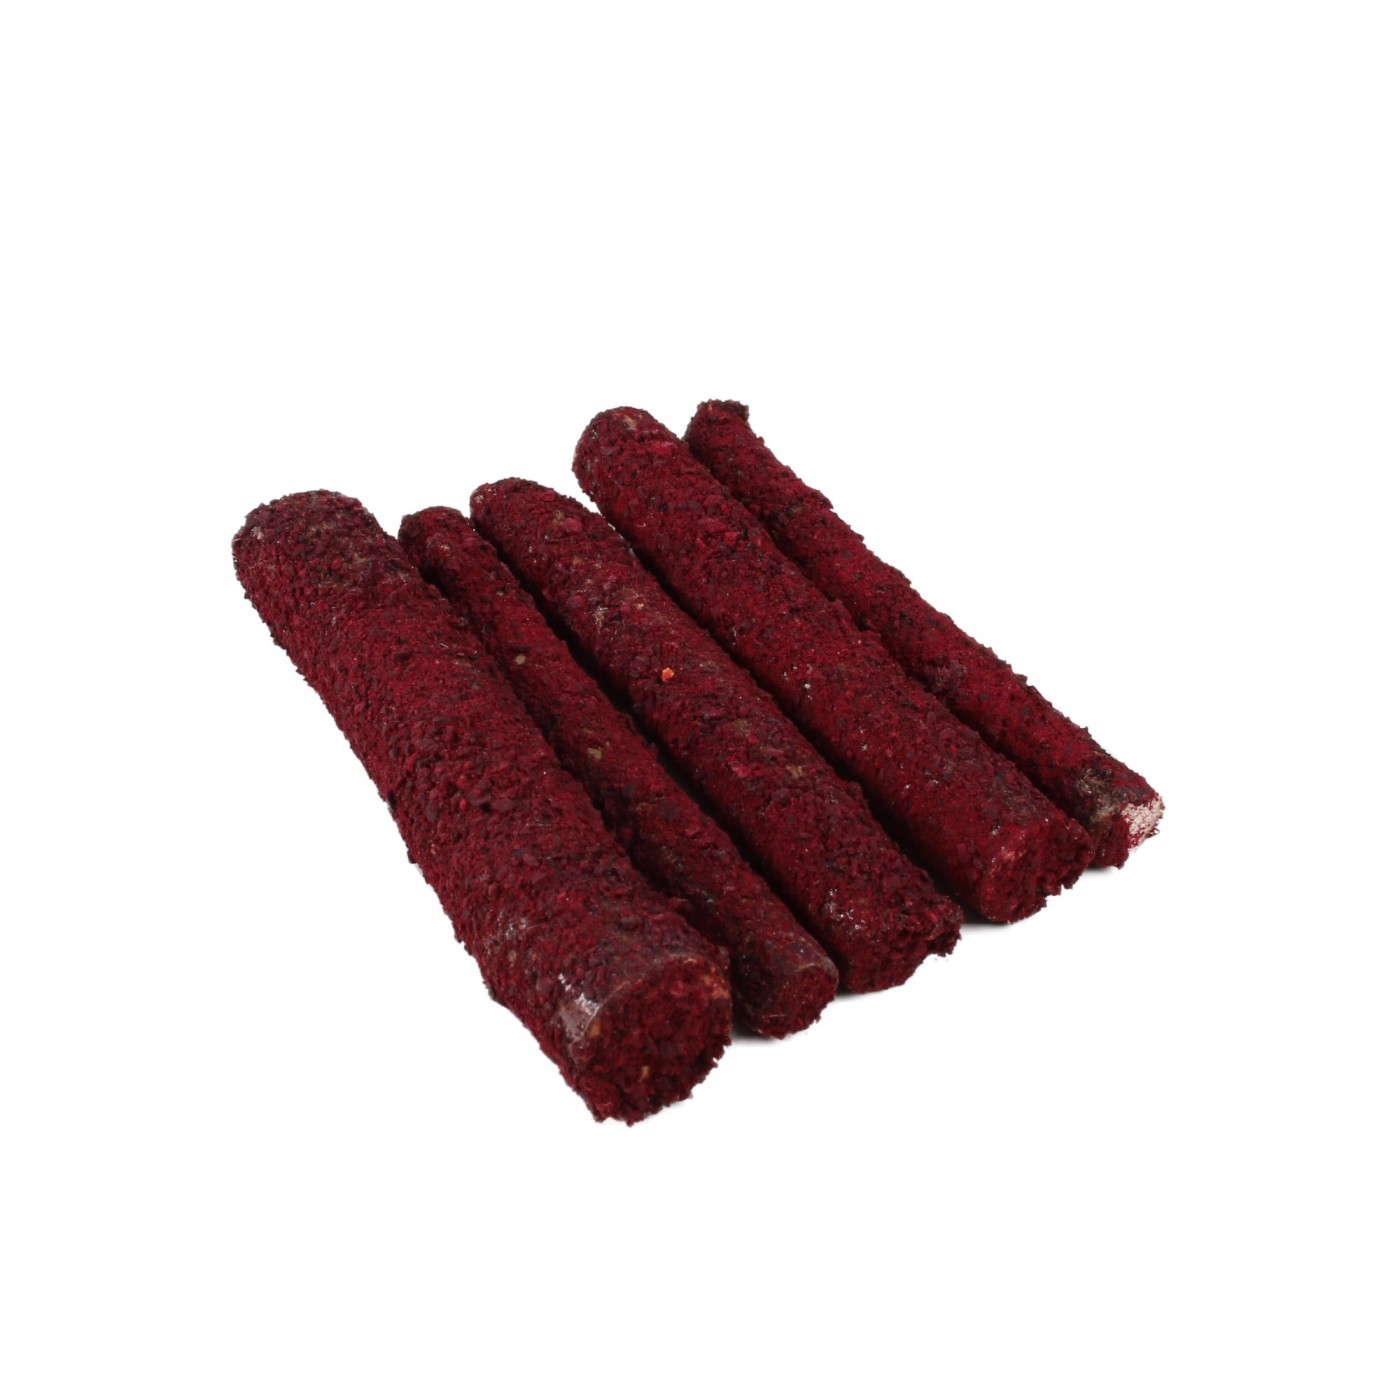 IAKO Knabberhölzer für Nagetiere mit roter Beete - Packet mit 5 Sticks